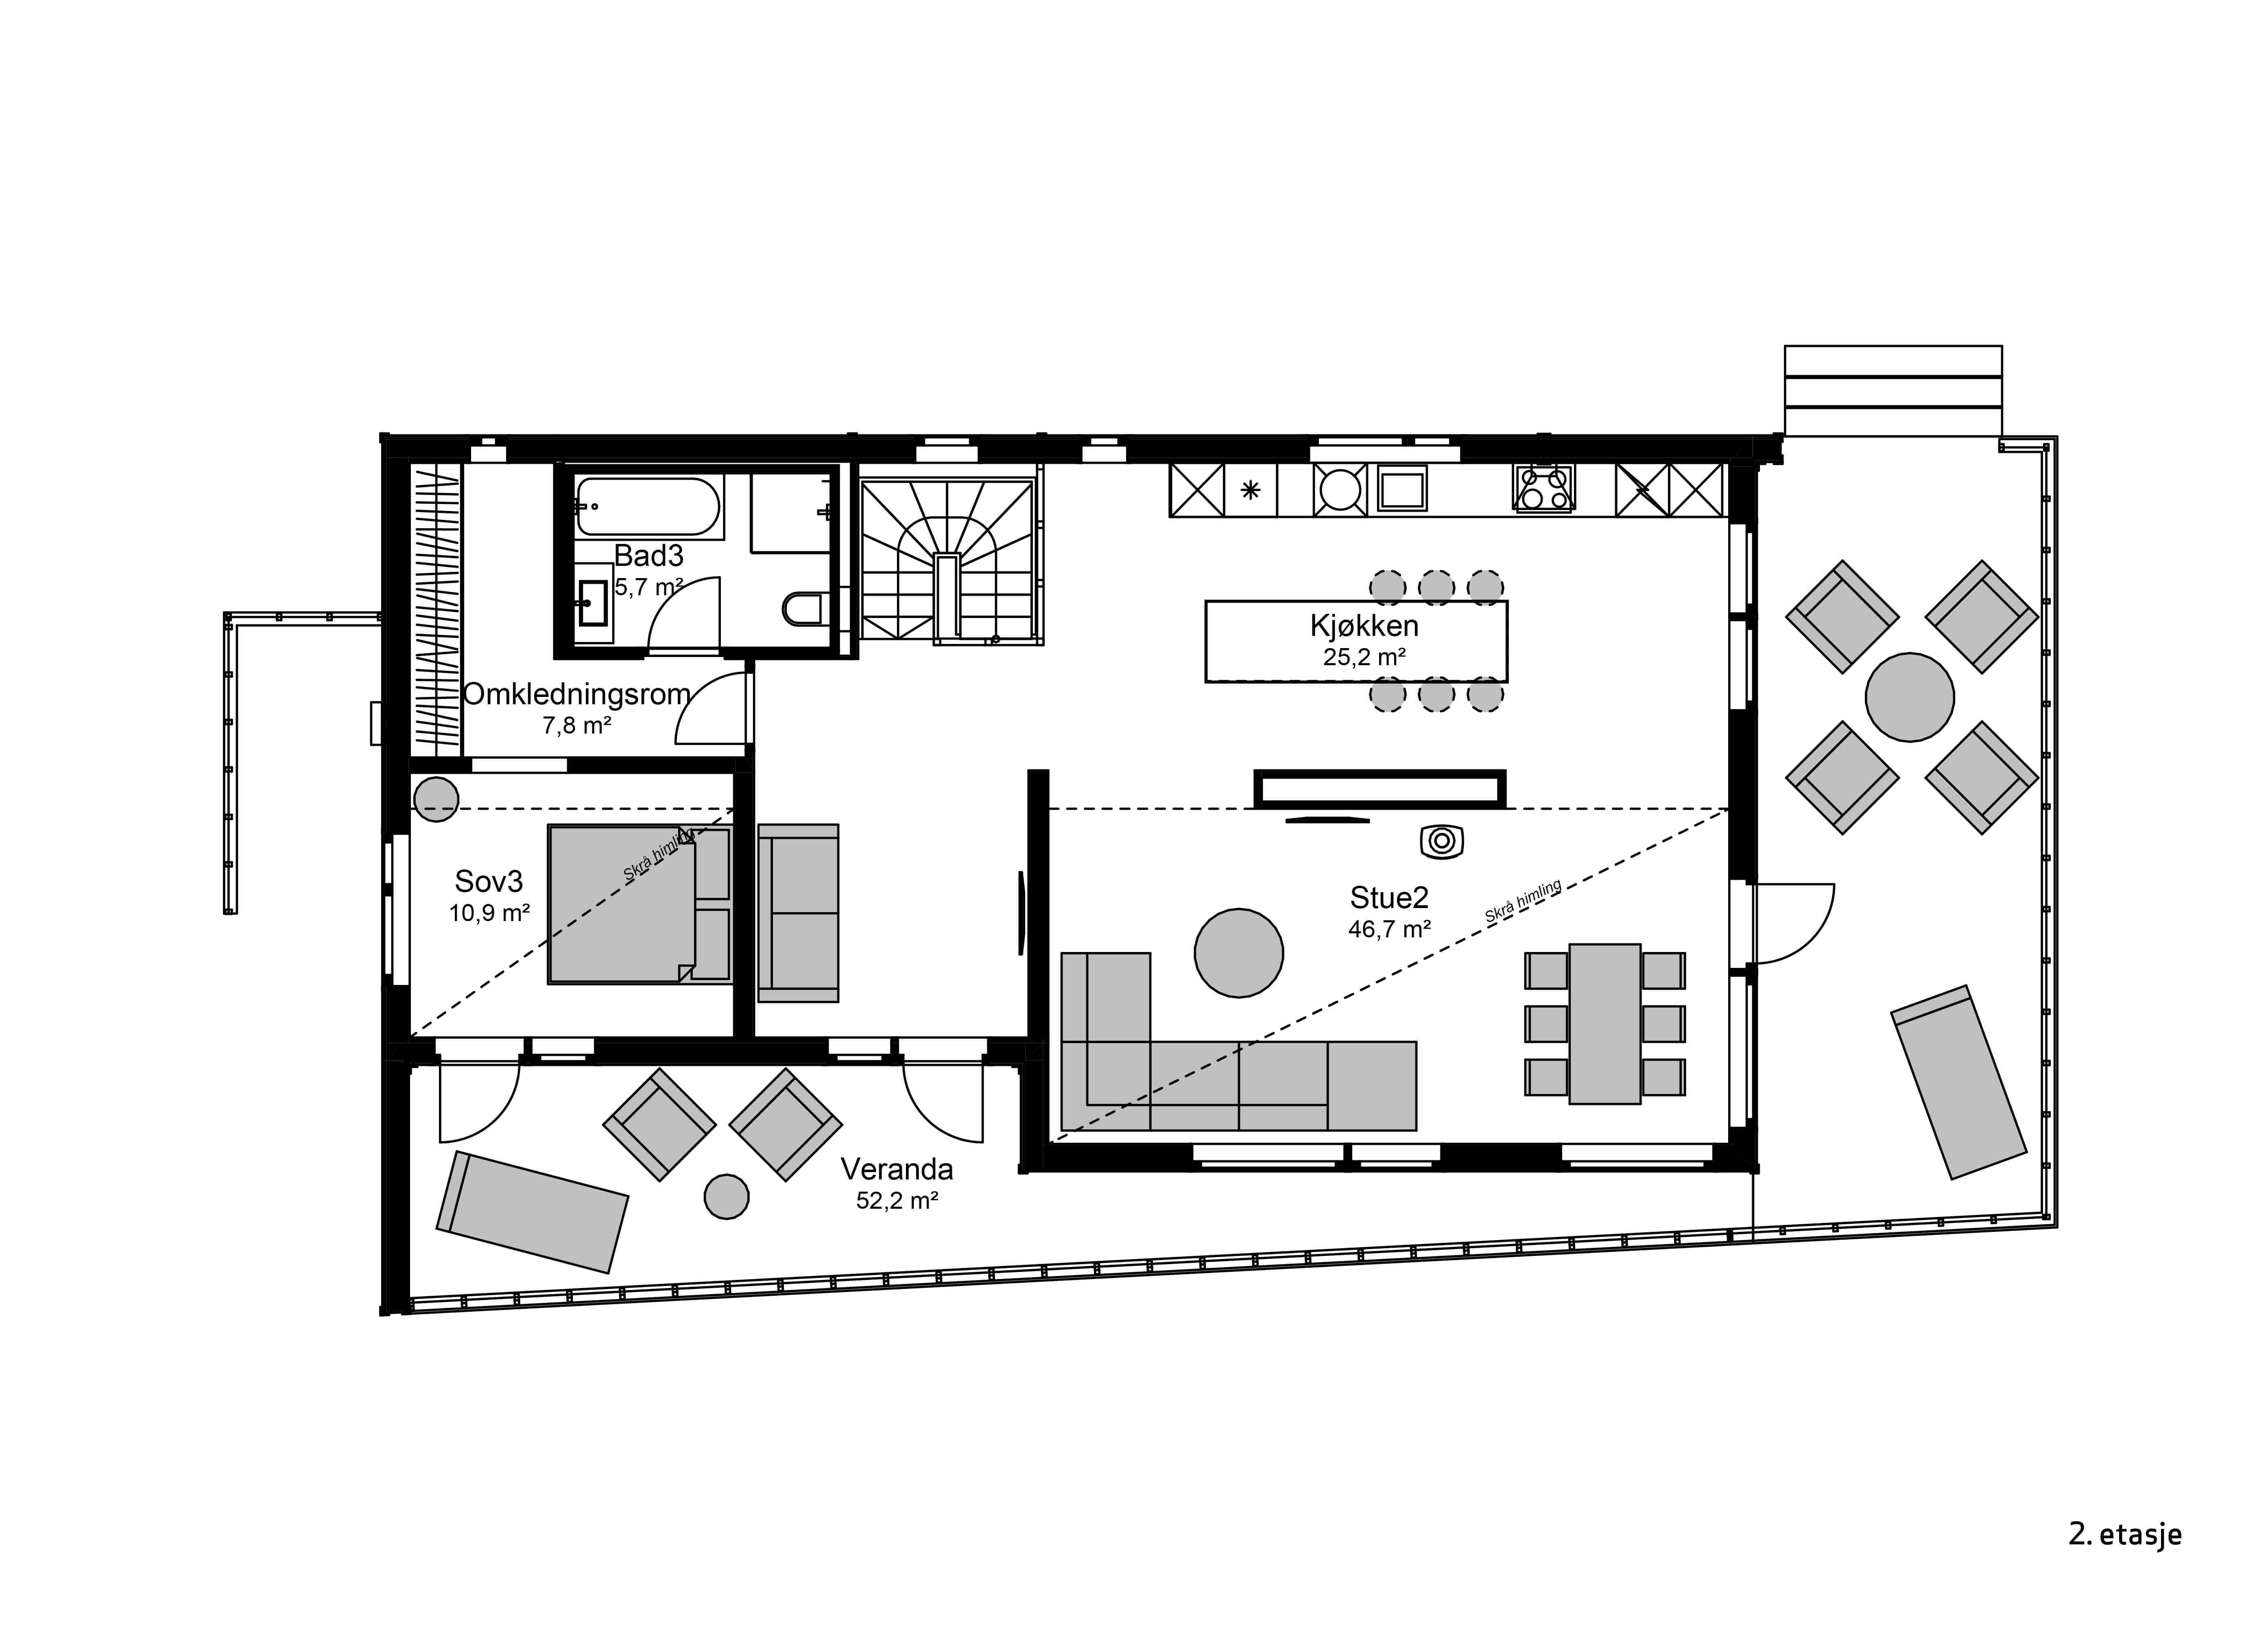 Møbleringsplan av 2.etasje i husmodellen Wide skrå